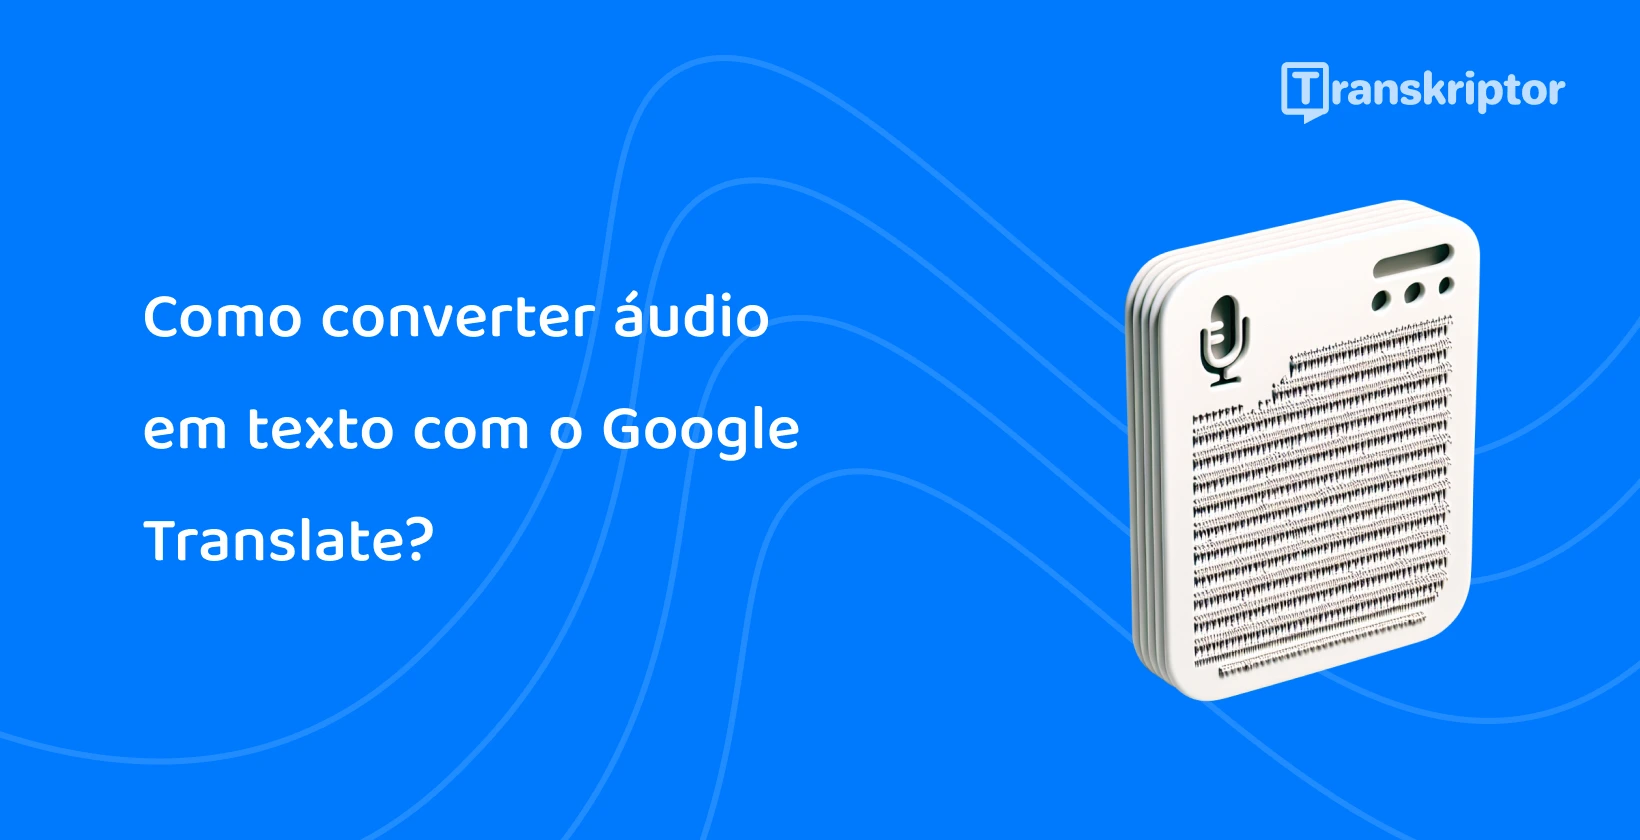 Ilustração de um arquivo de áudio em um dispositivo, mostrando o recurso do Google Tradutor para converter fala em texto de forma eficiente.